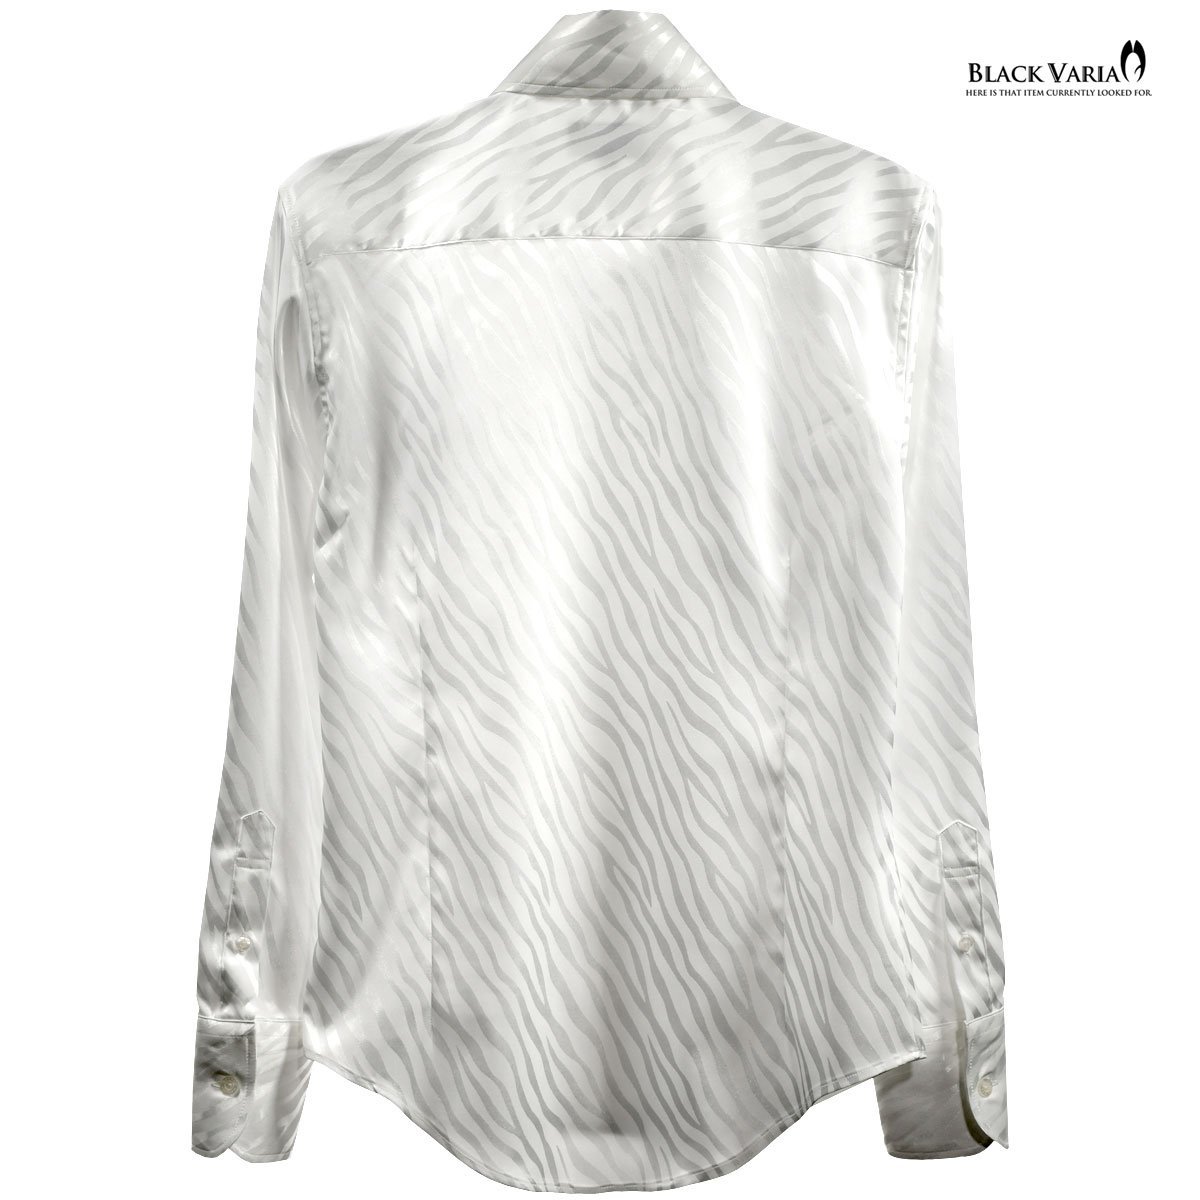 181724-wh BlackVaria サテンシャツ ドレスシャツ スキッパー ゼブラ柄 ジャガード ボタンダウン スリム メンズ(ホワイト白) XL パーティー_画像5